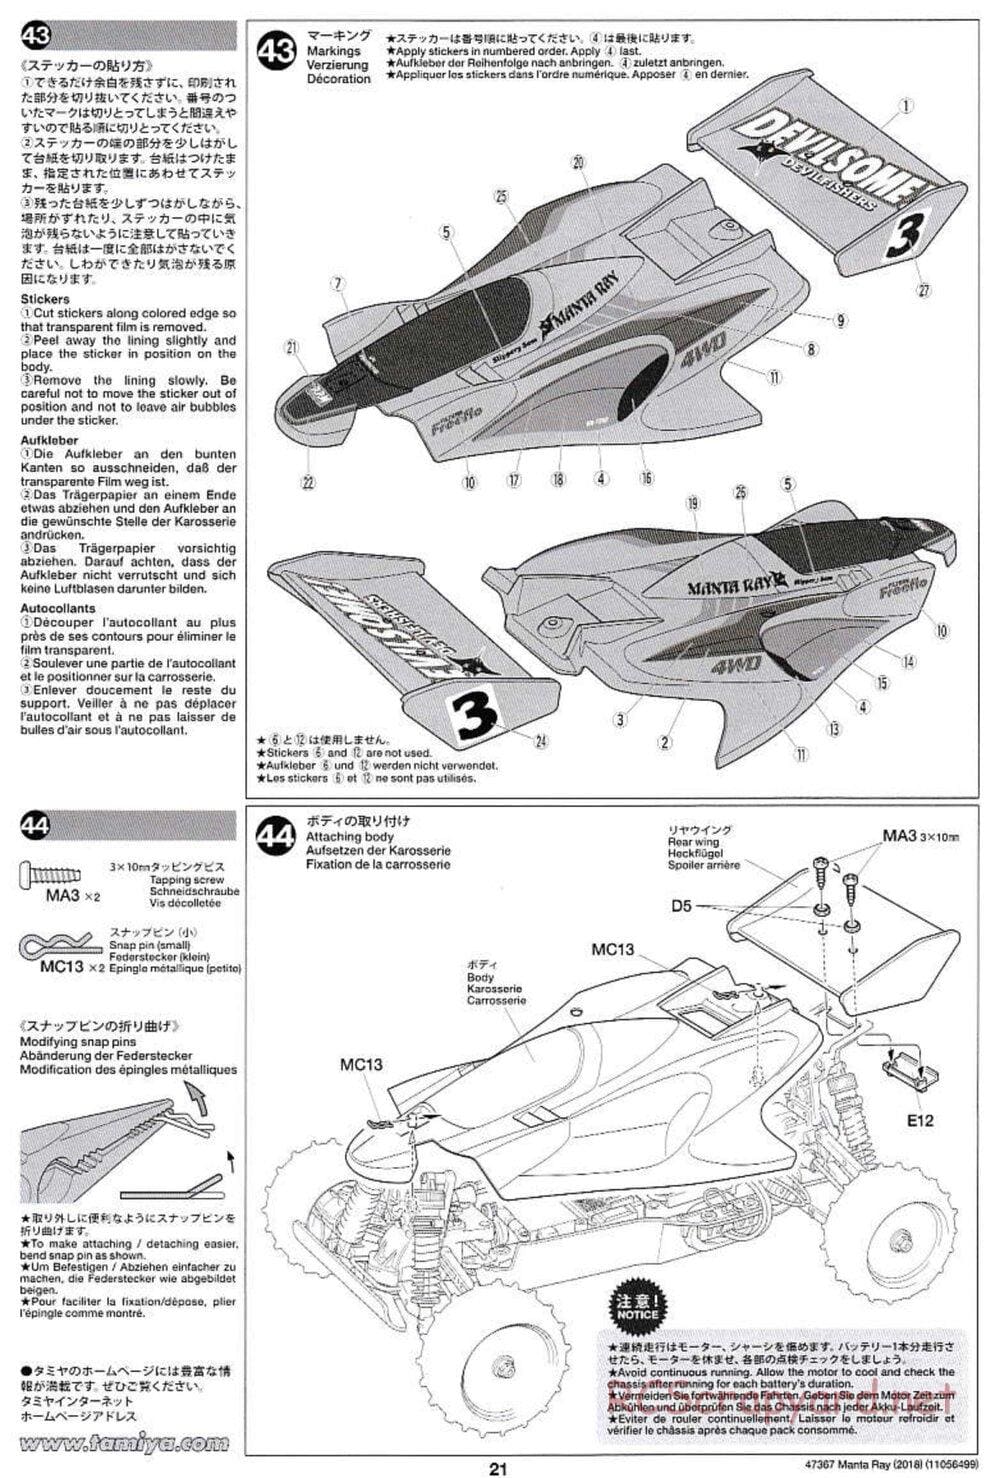 Tamiya - Manta Ray 2018 - DF-01 Chassis - Manual - Page 21